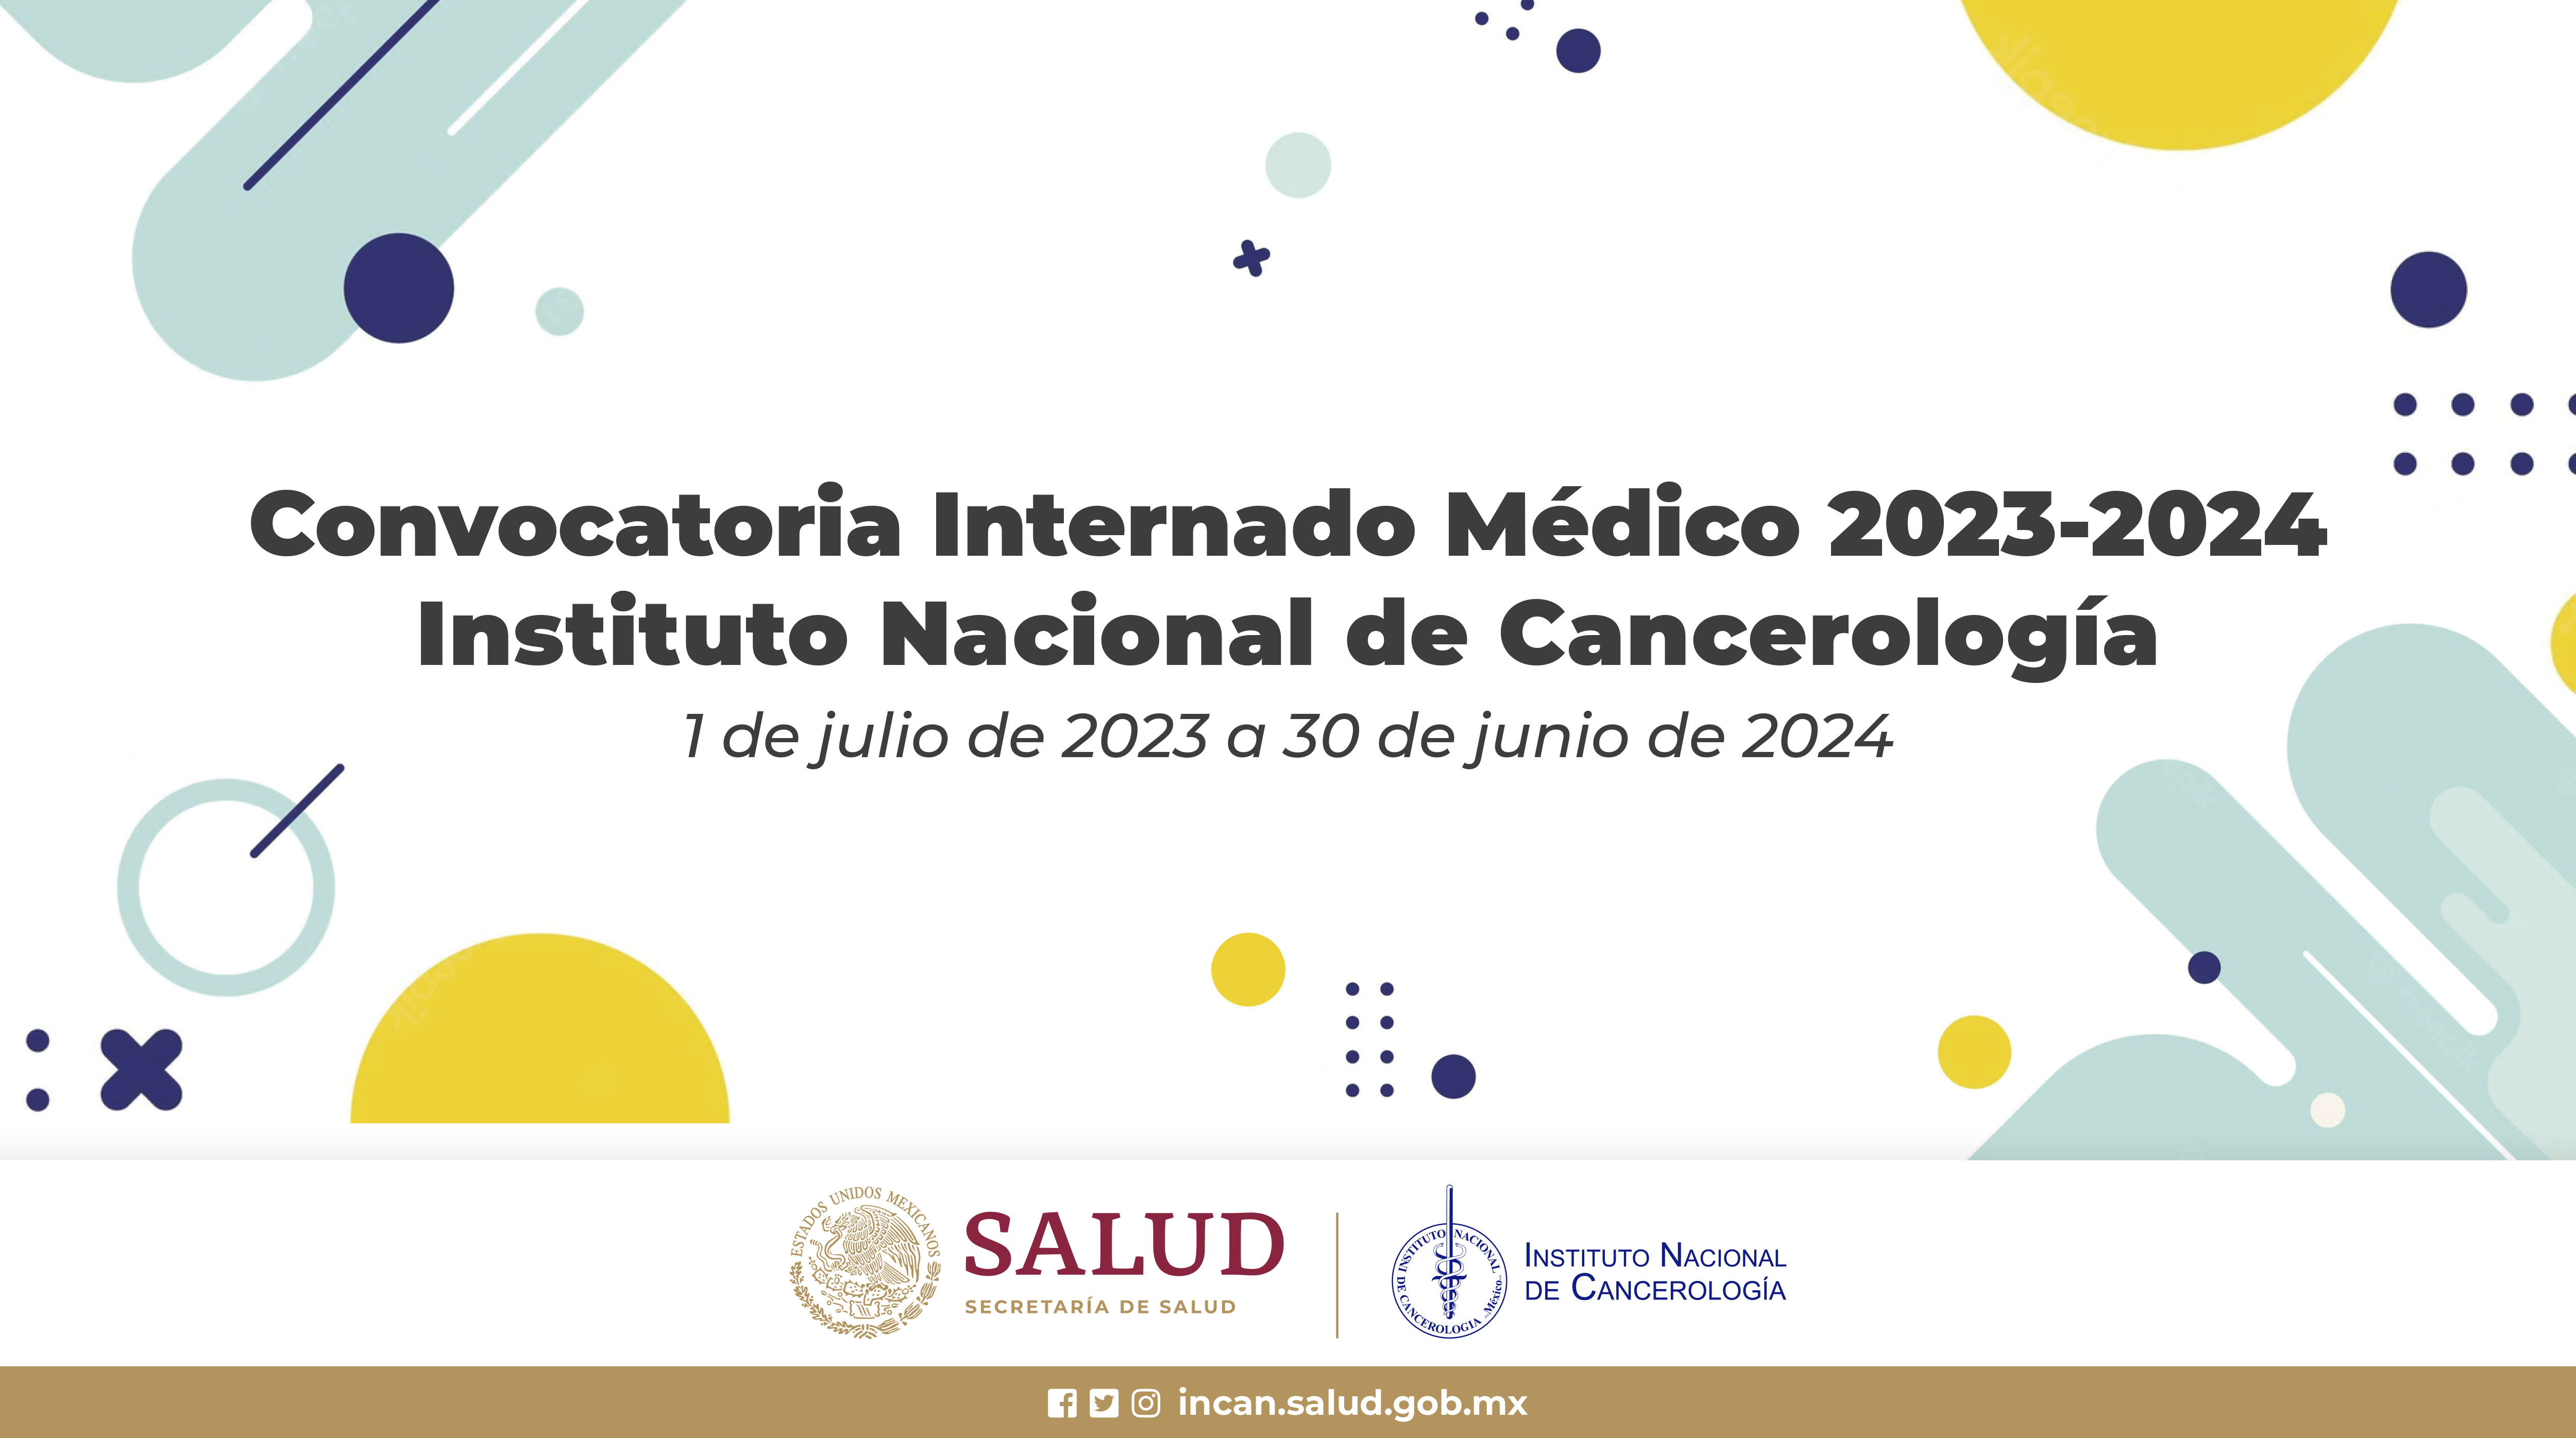 Convocatoria internado Médico 2023-2024 Instituto Nacional de Cancerología